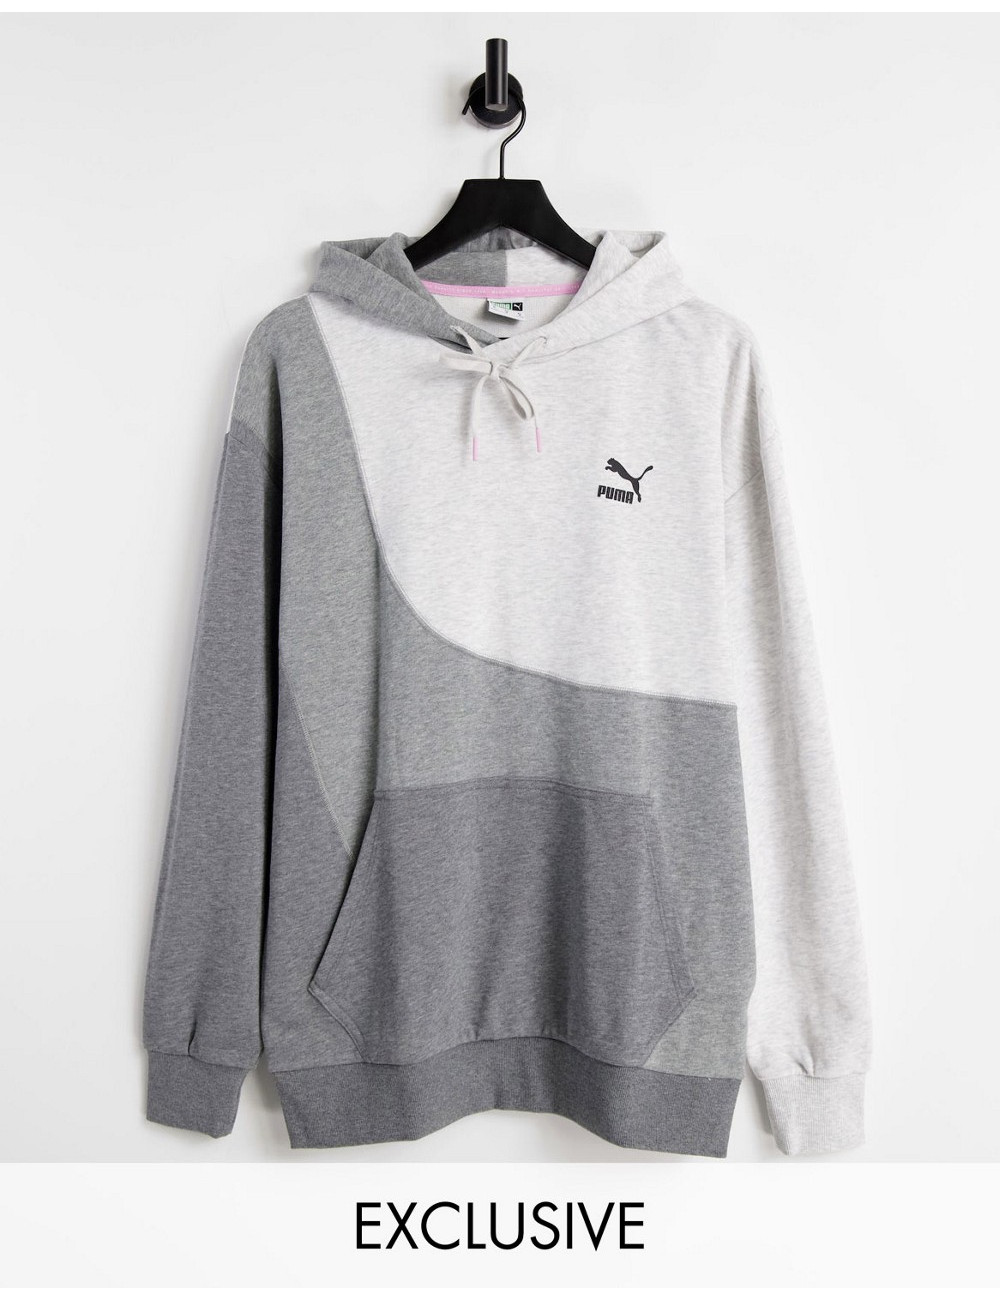 Puma convey hoodie in grey...